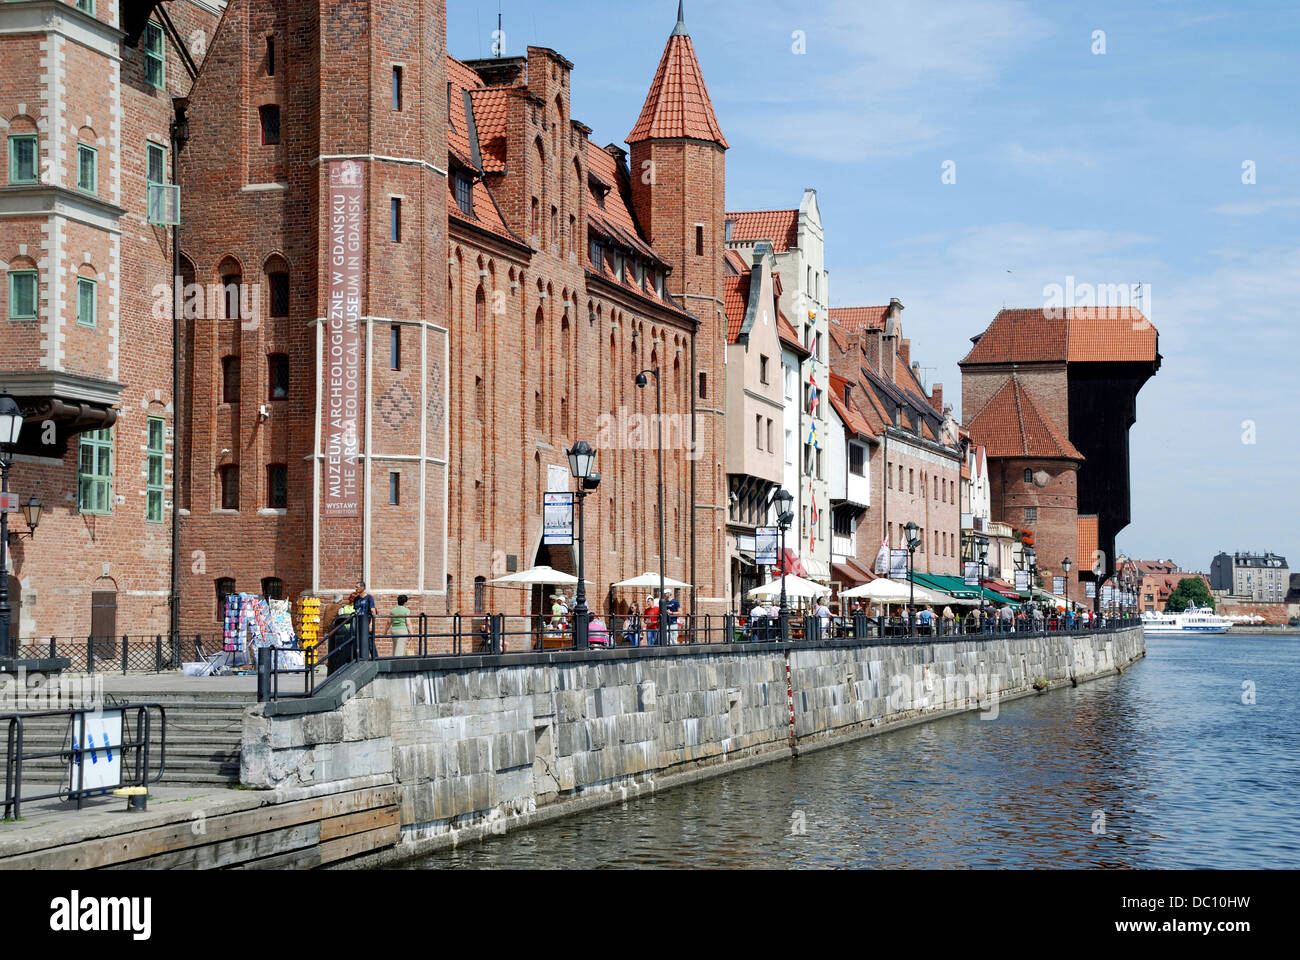 Il centro storico di Danzica con il vecchio porto sul Motlawa. Foto Stock